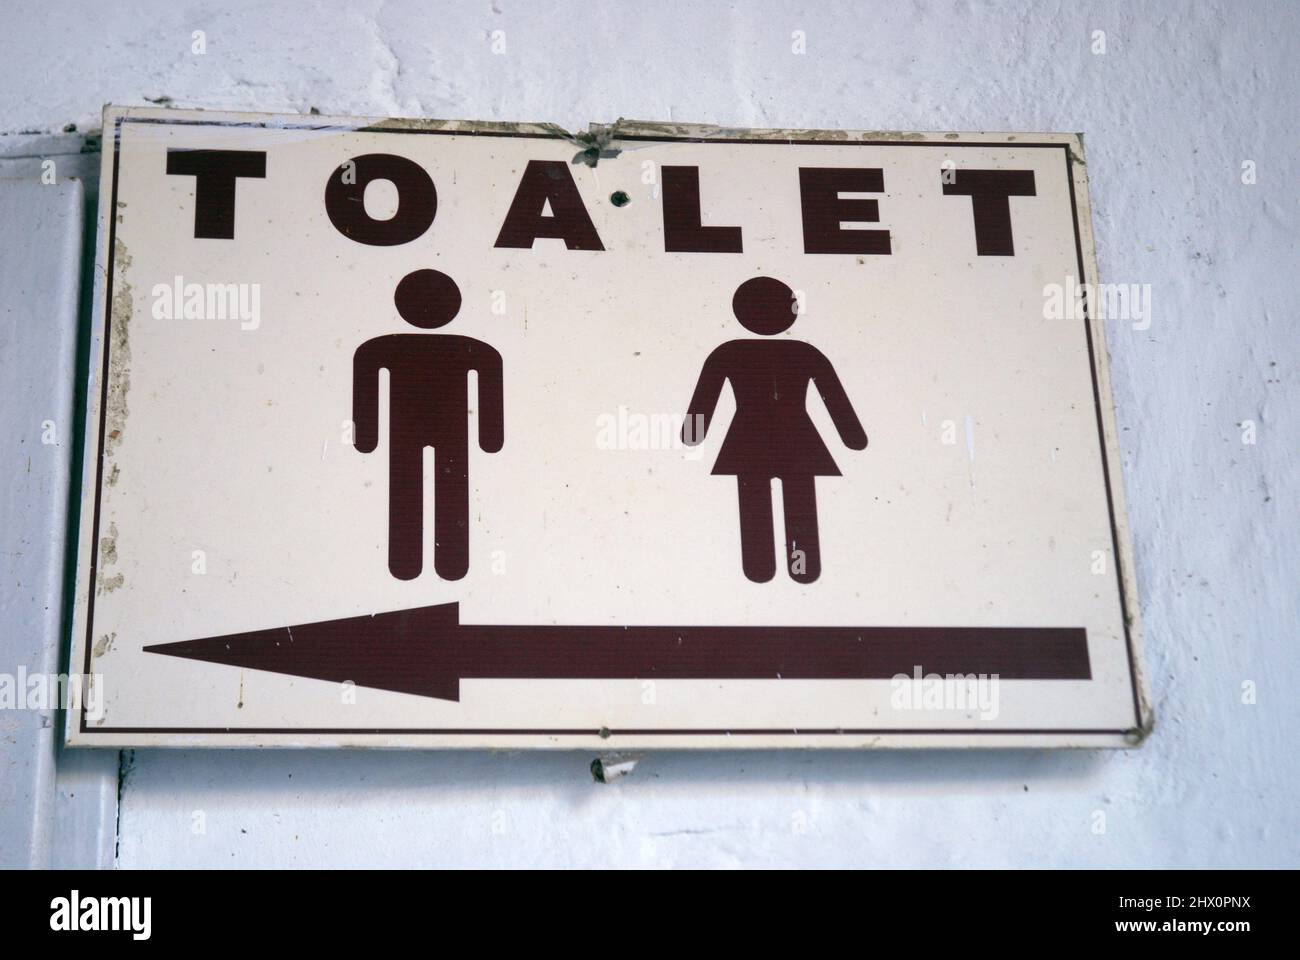 Toilet (Toalet) sign, Rila Monastery & Boyana Church, Bulgaria. Stock Photo